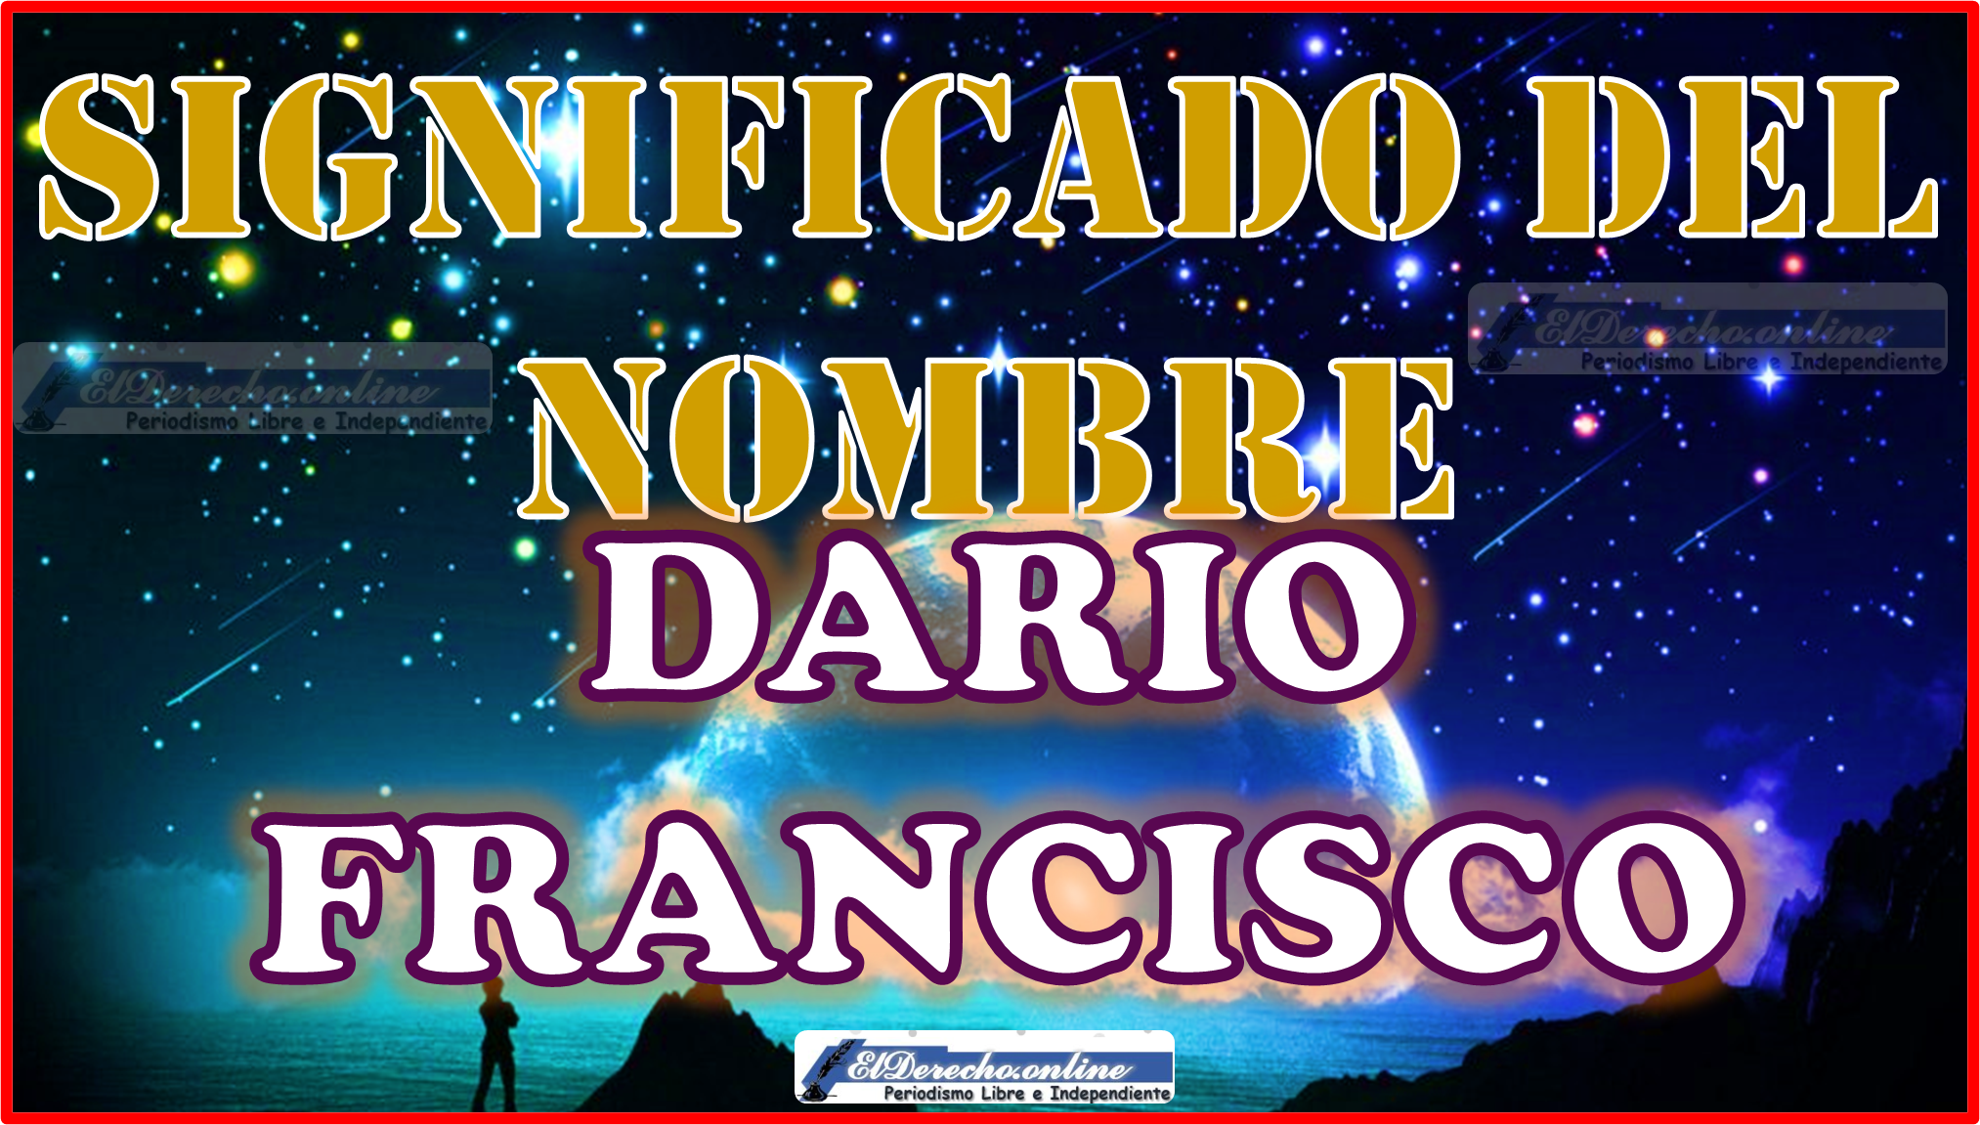 Significado del nombre Dario Francisco, su origen y más